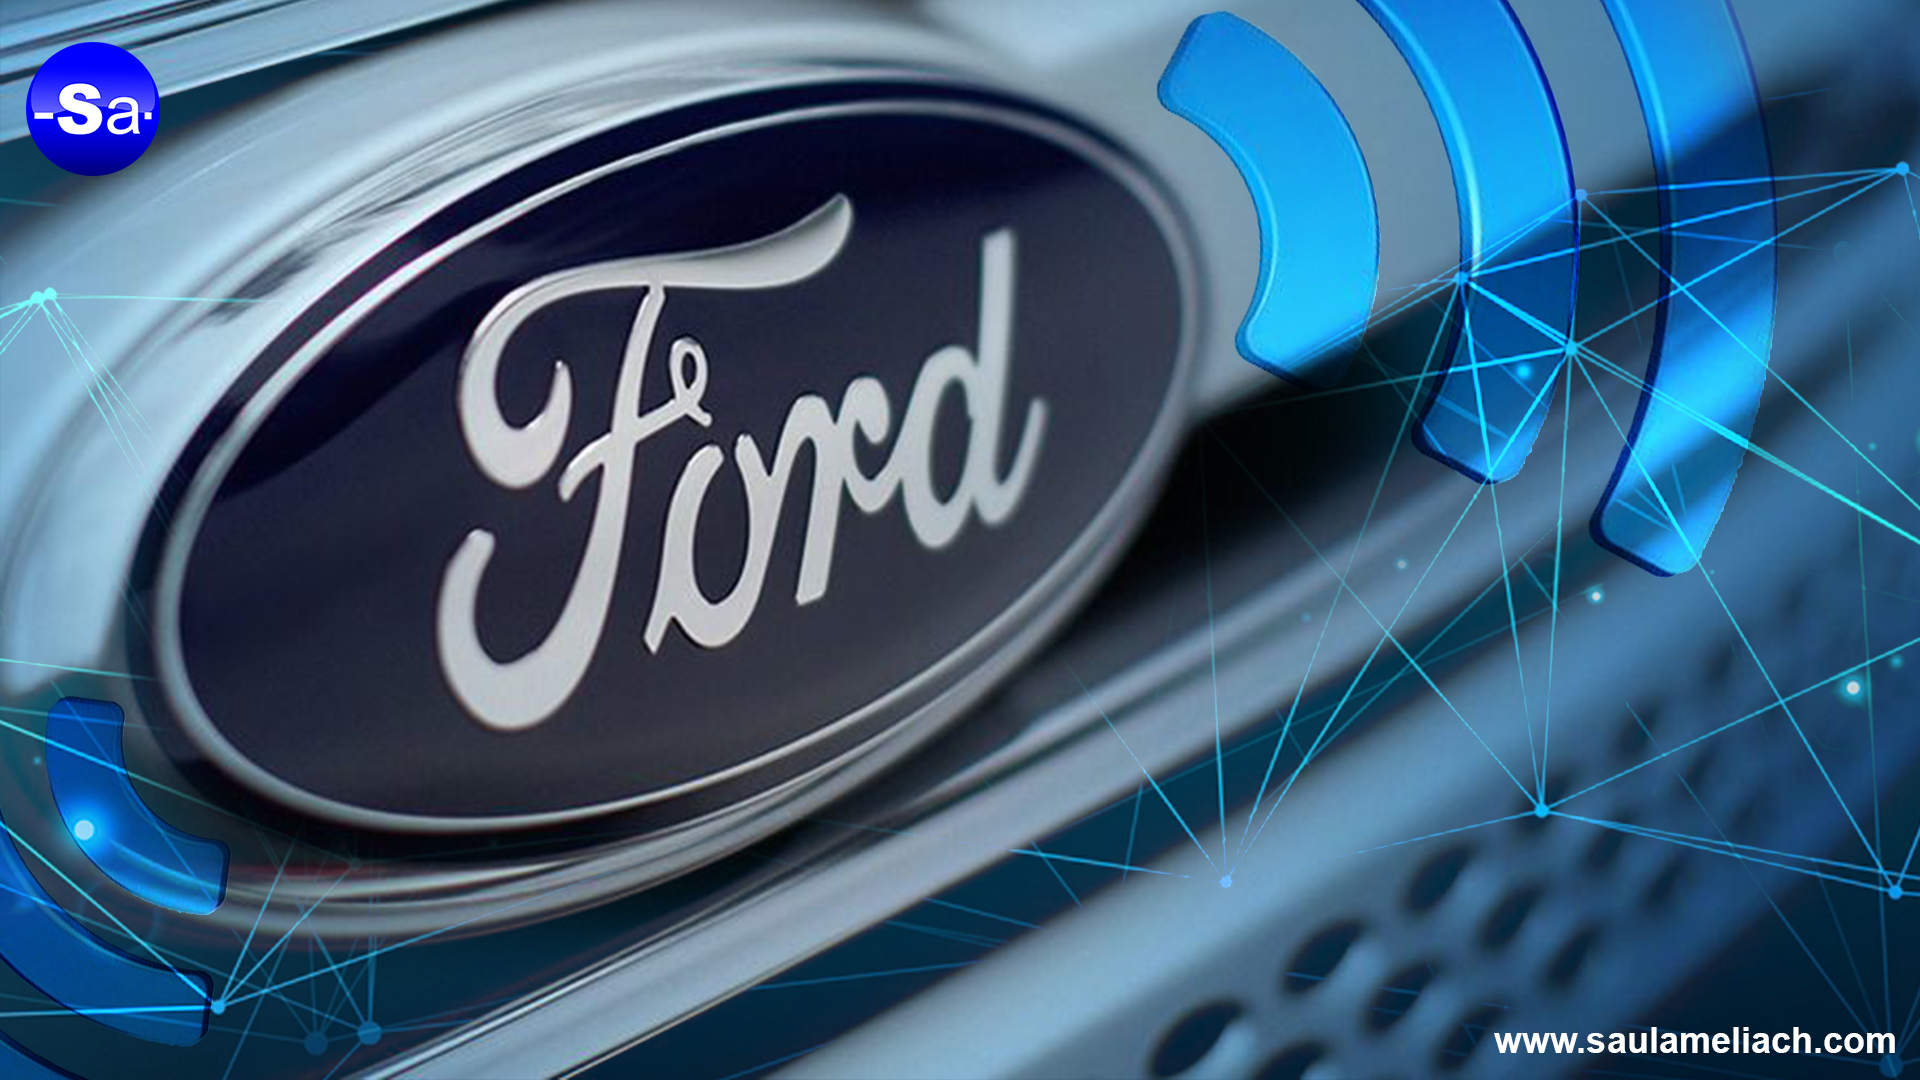 Ford Patenta Sistema de Comunicación entre Vehículos en Criptoactivos